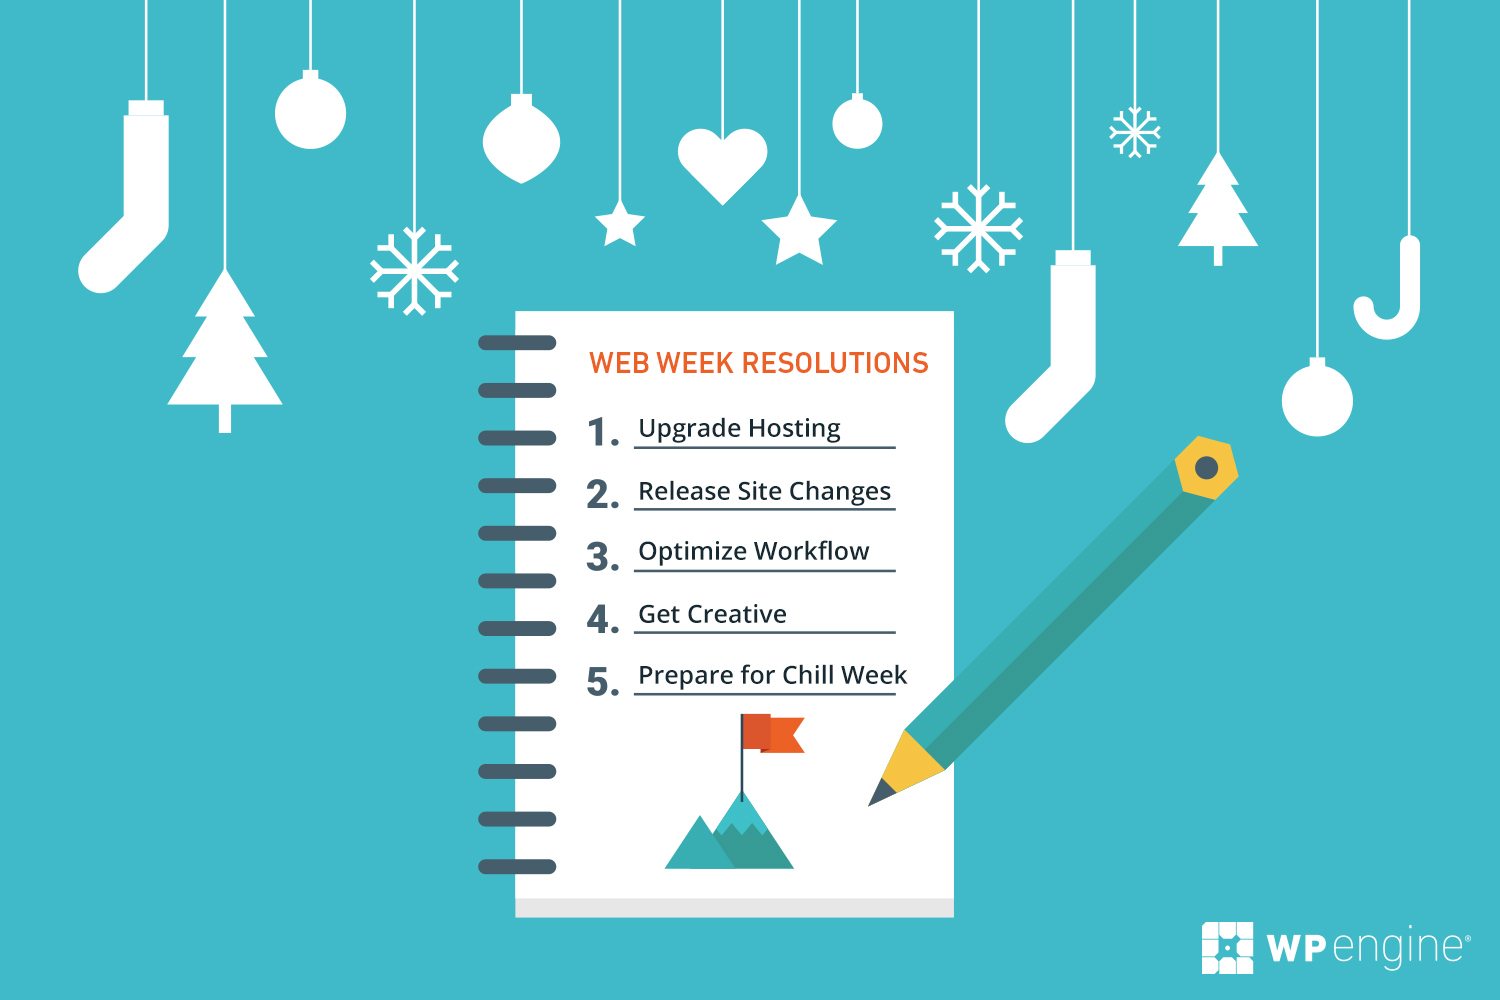 Introducing Web Week 2016 - Web Week Resolutions